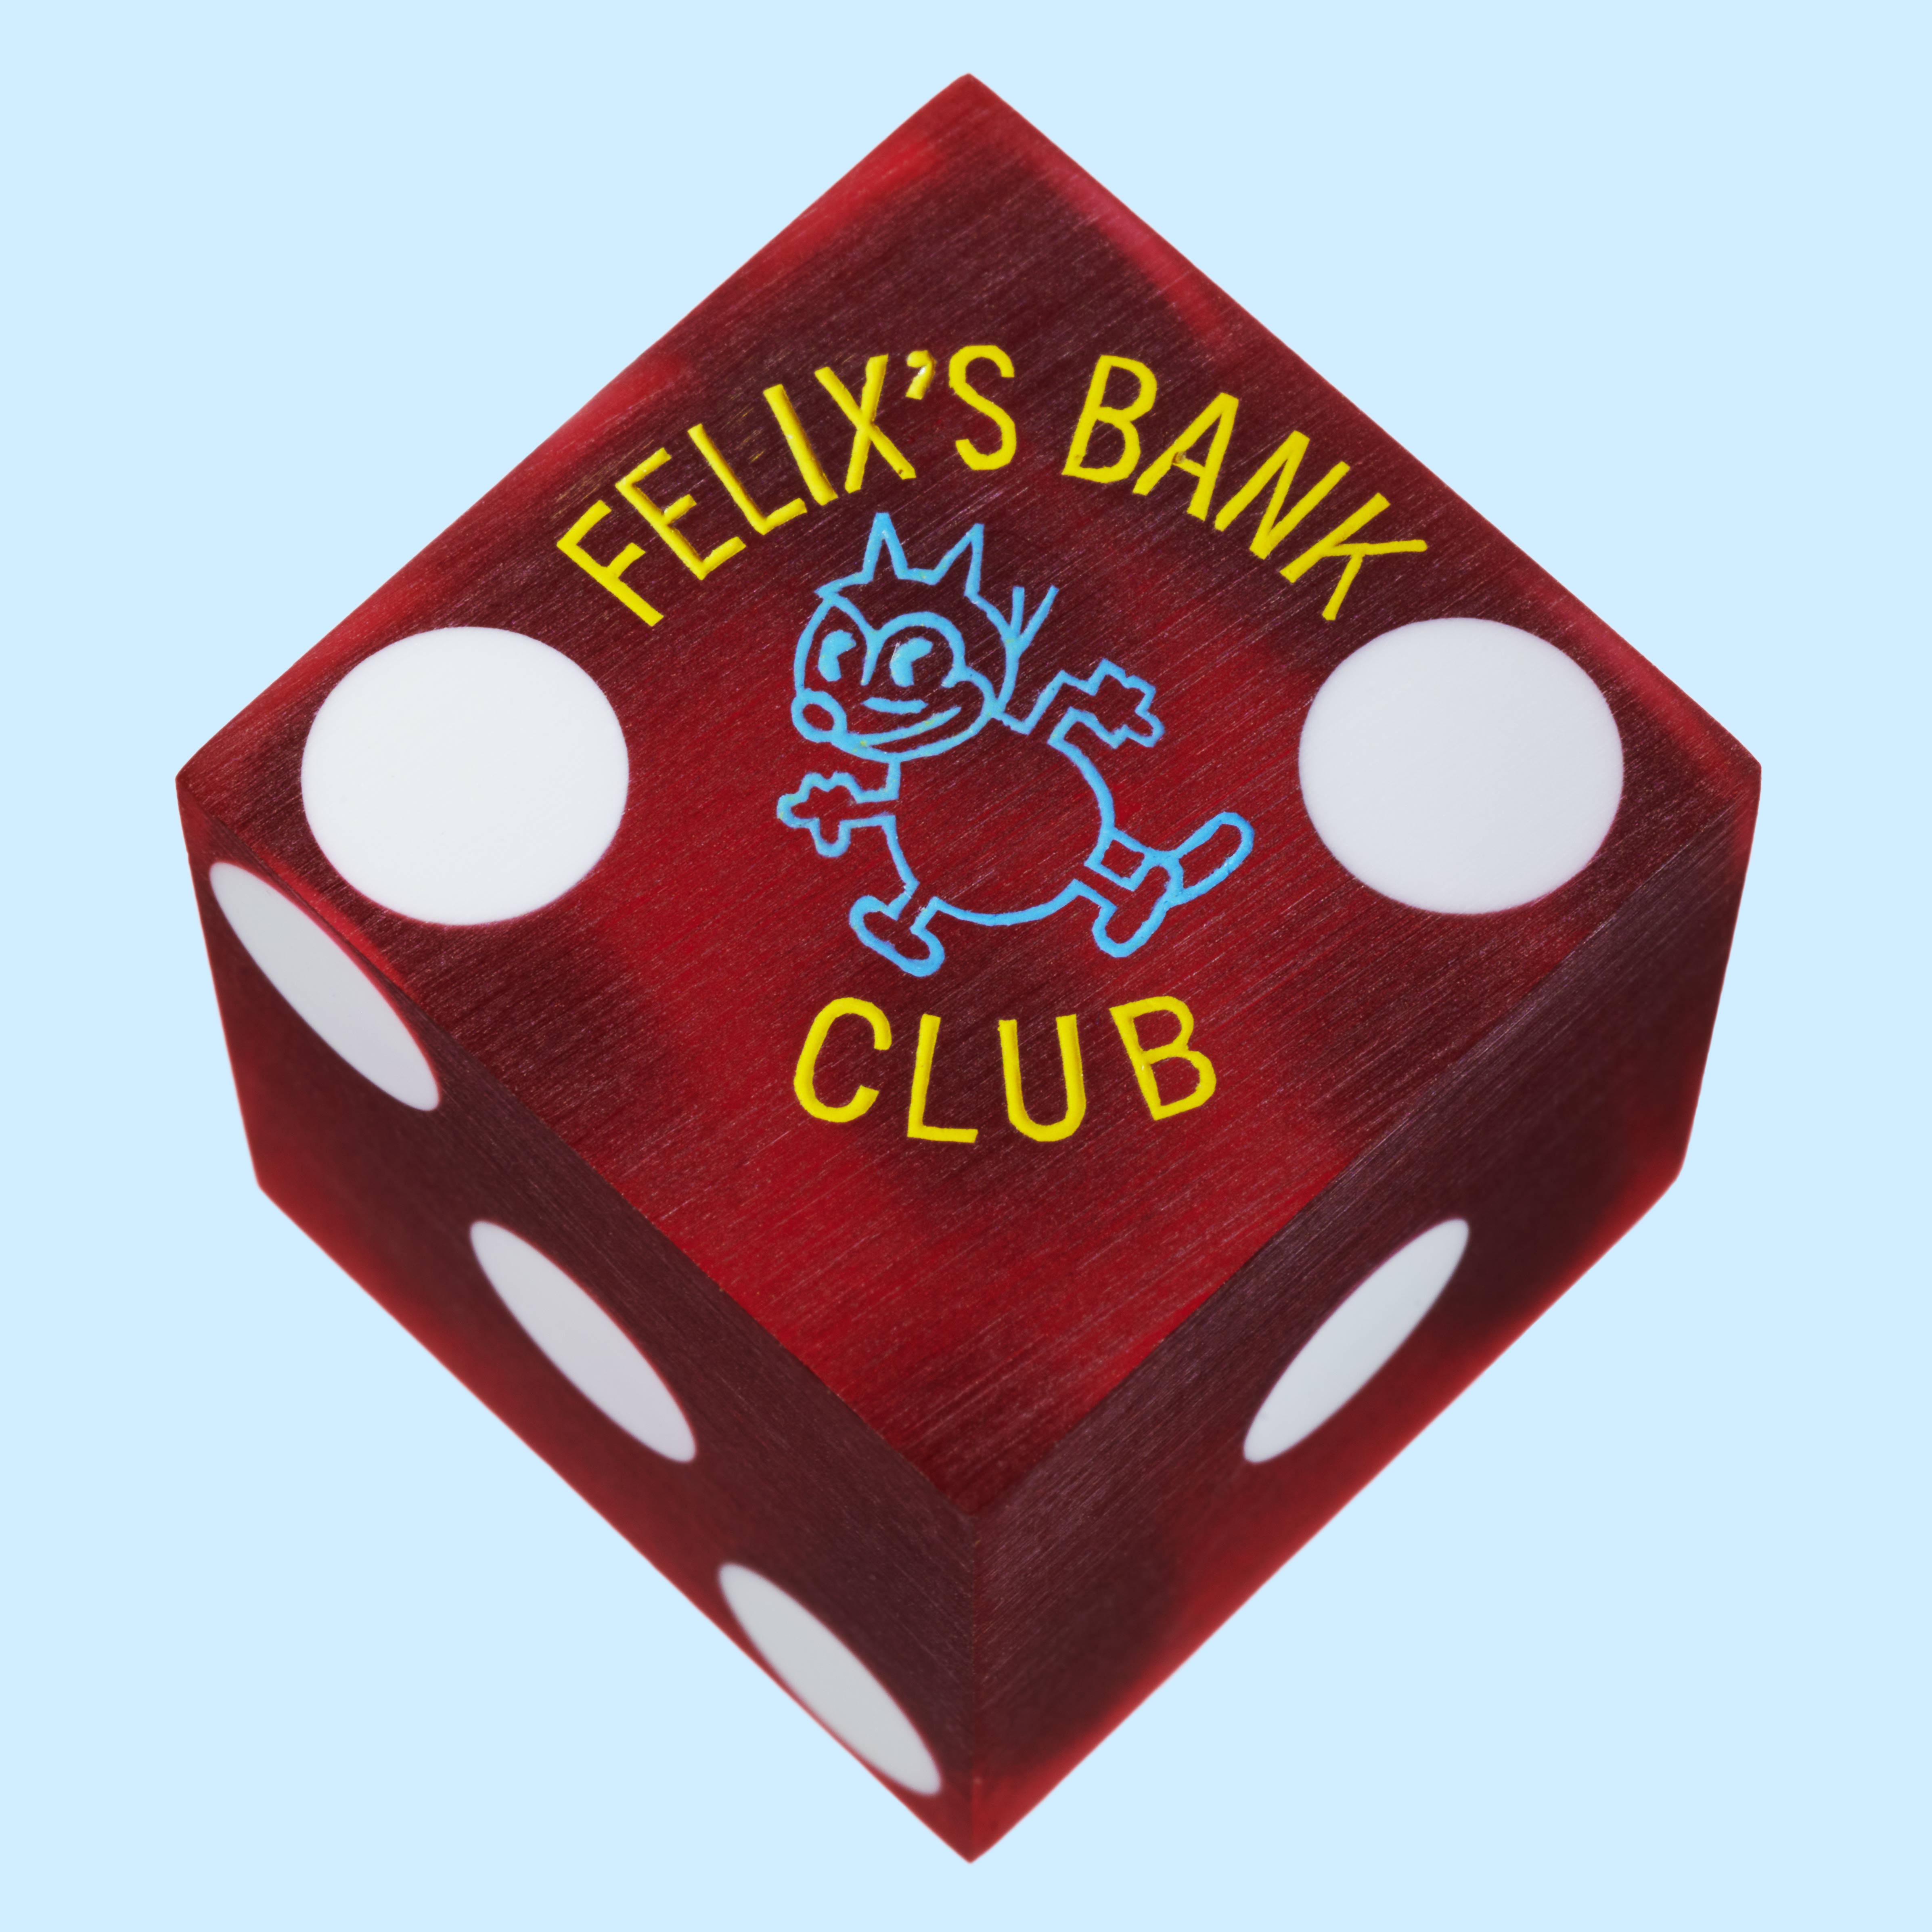 Felixs_Bank_Club_049_SFW_Blue